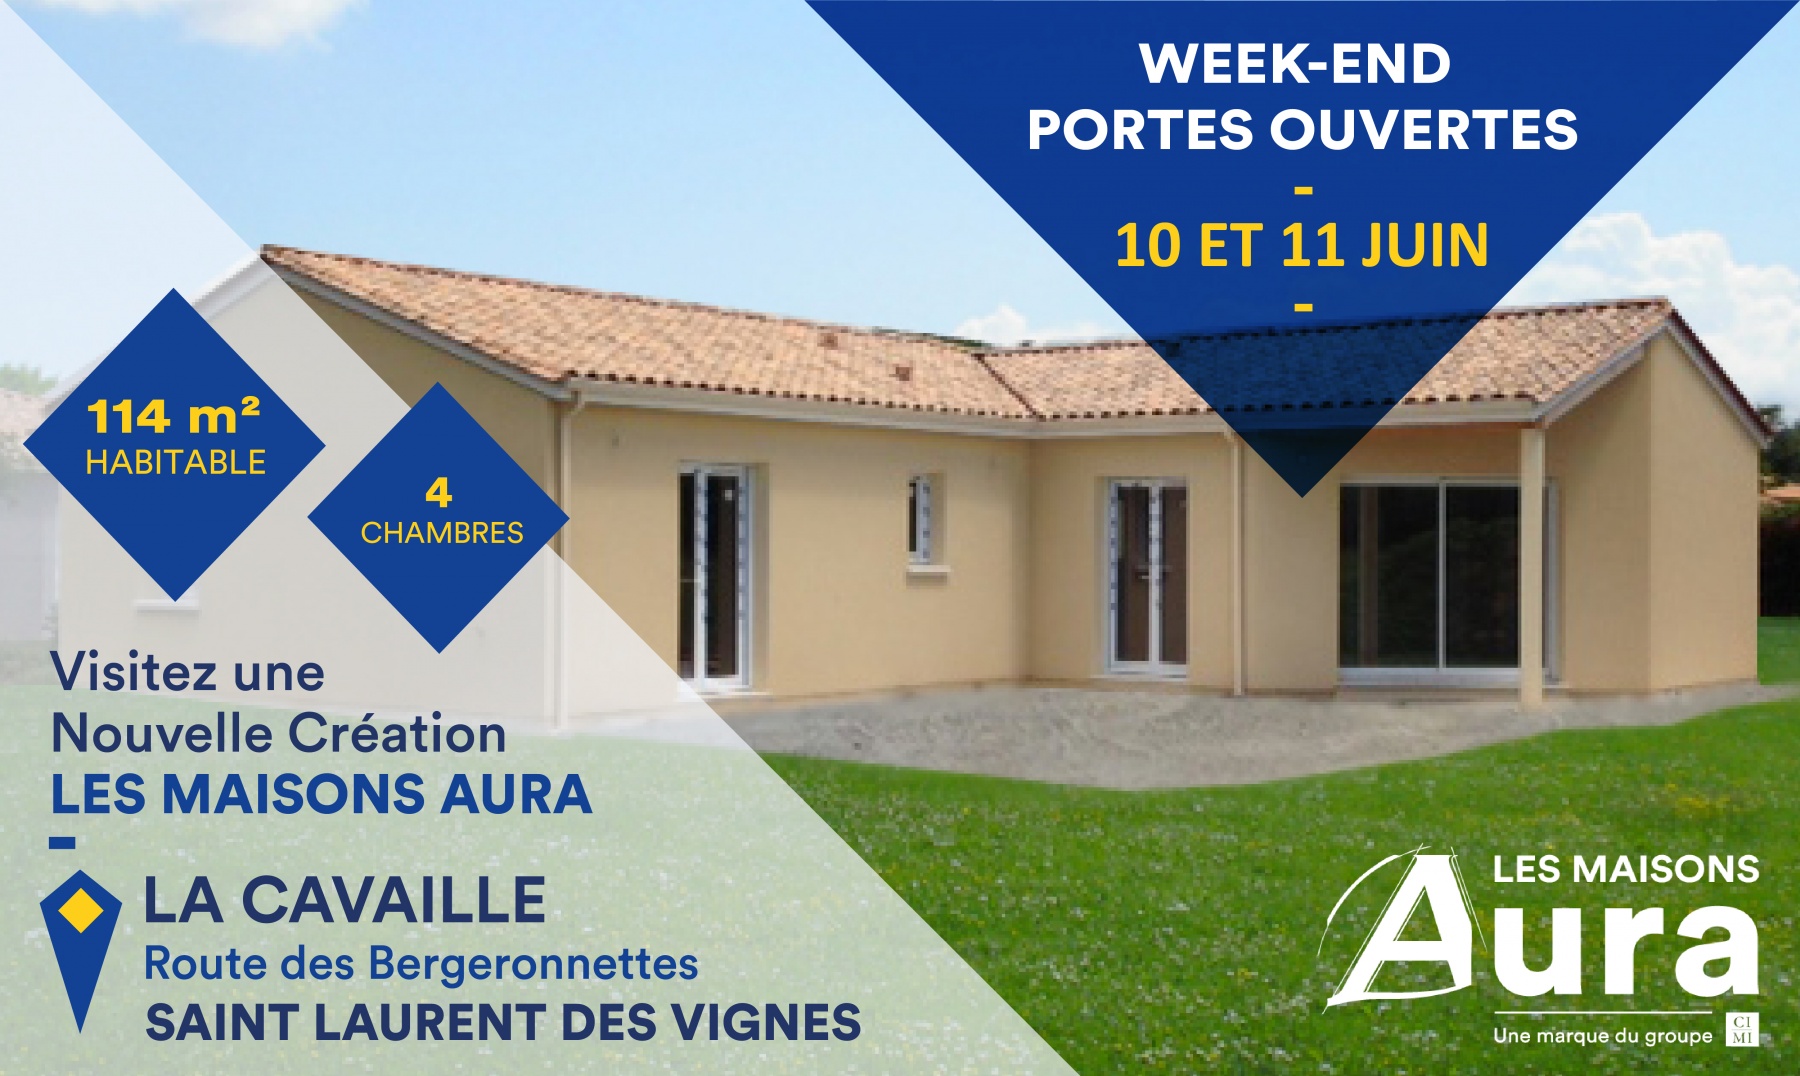 Portes ouvertes Maisons Aura à Saint-Laurent-des-Vignes les 10 et 11 juin 2017